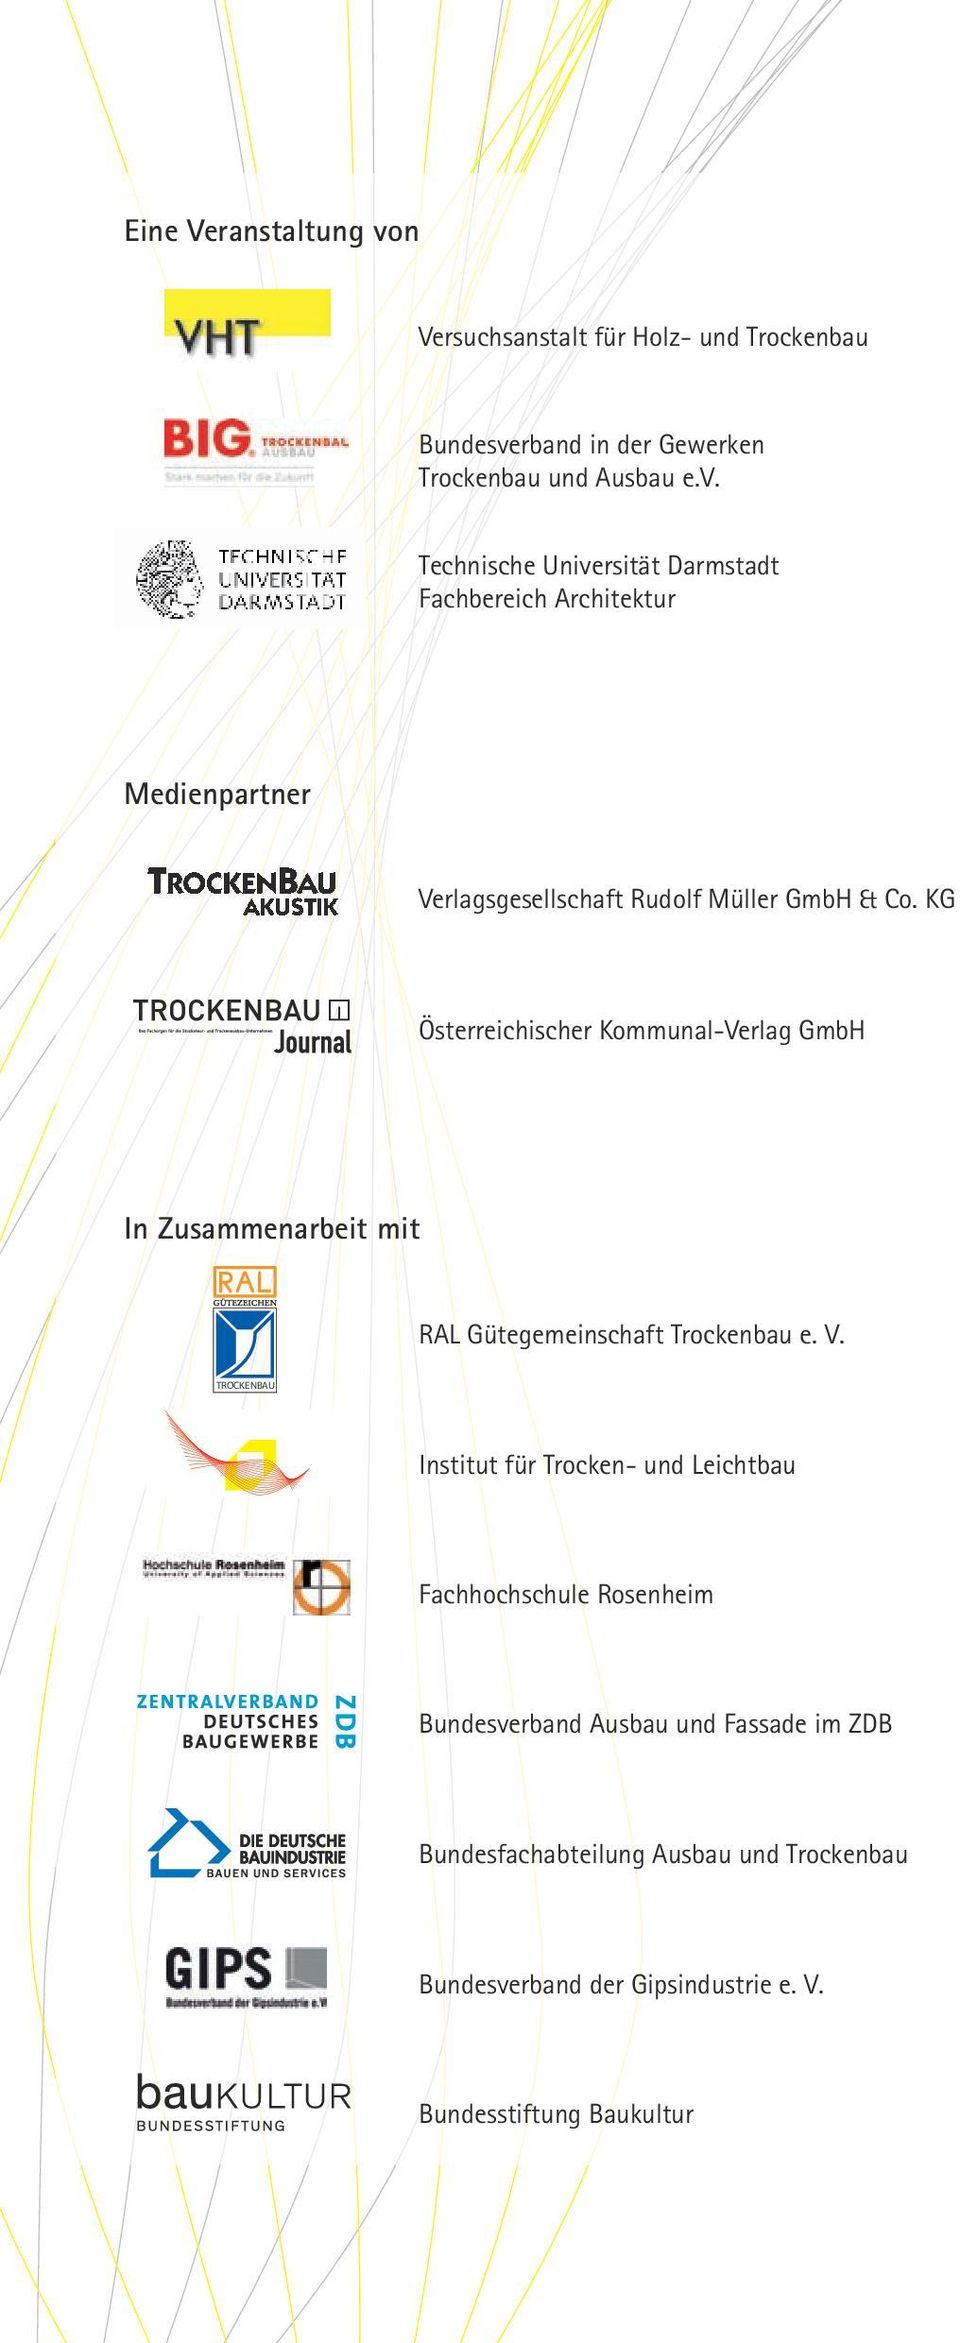 KG Österreichischer Kommunal-Verlag GmbH In Zusammenarbeit mit RAL Gütegemeinschaft Trockenbau e. V.